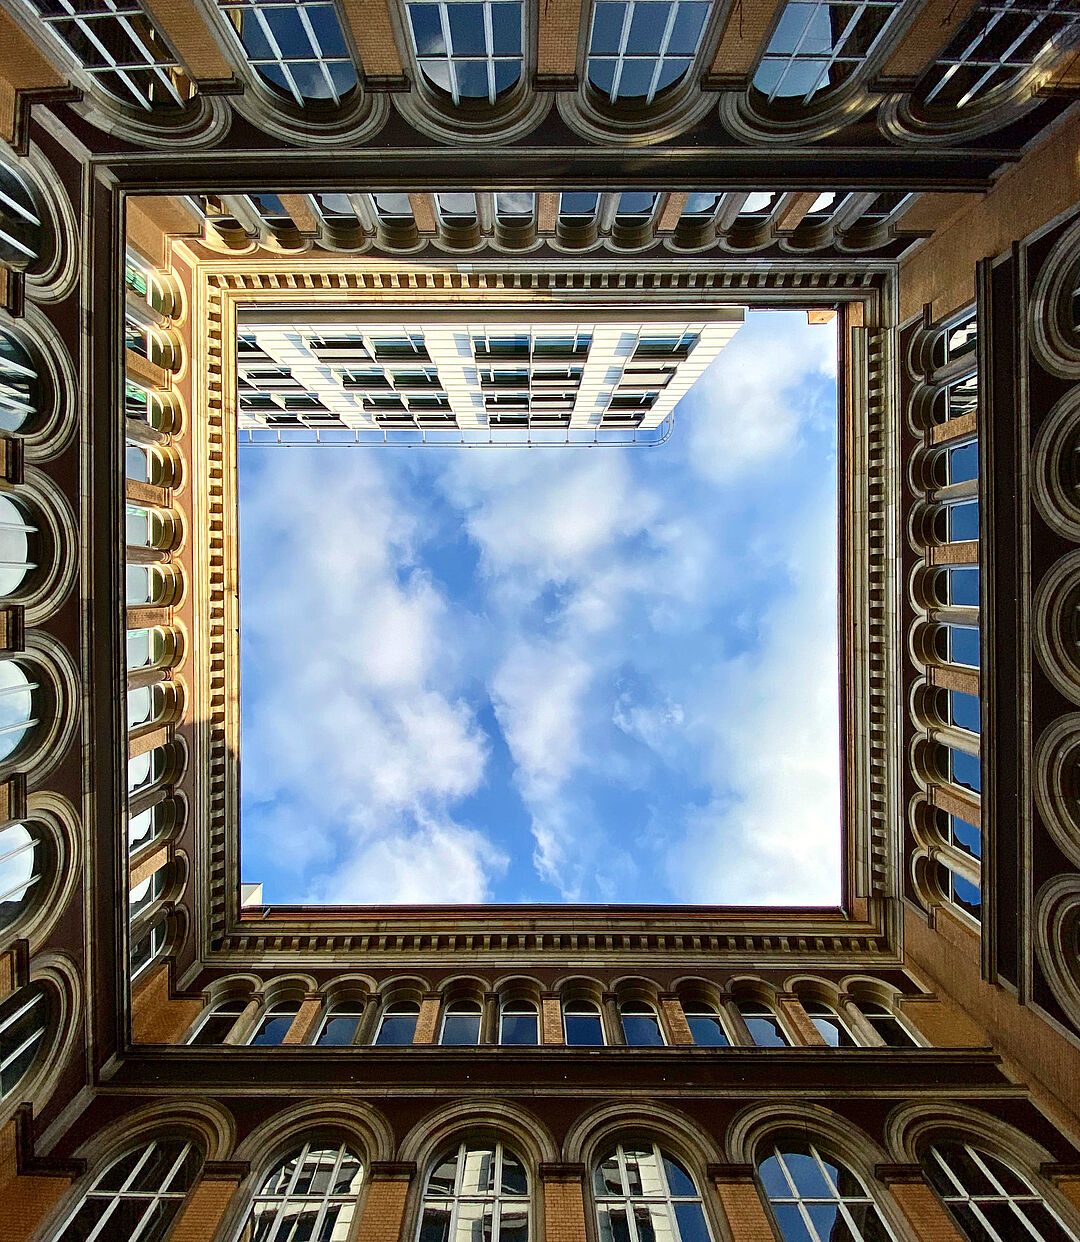 Blick in den Himmel im Innenhof des Hauptgebäudes, die Fassade des Gebäudes bildet einen Rahmen um den Himmel